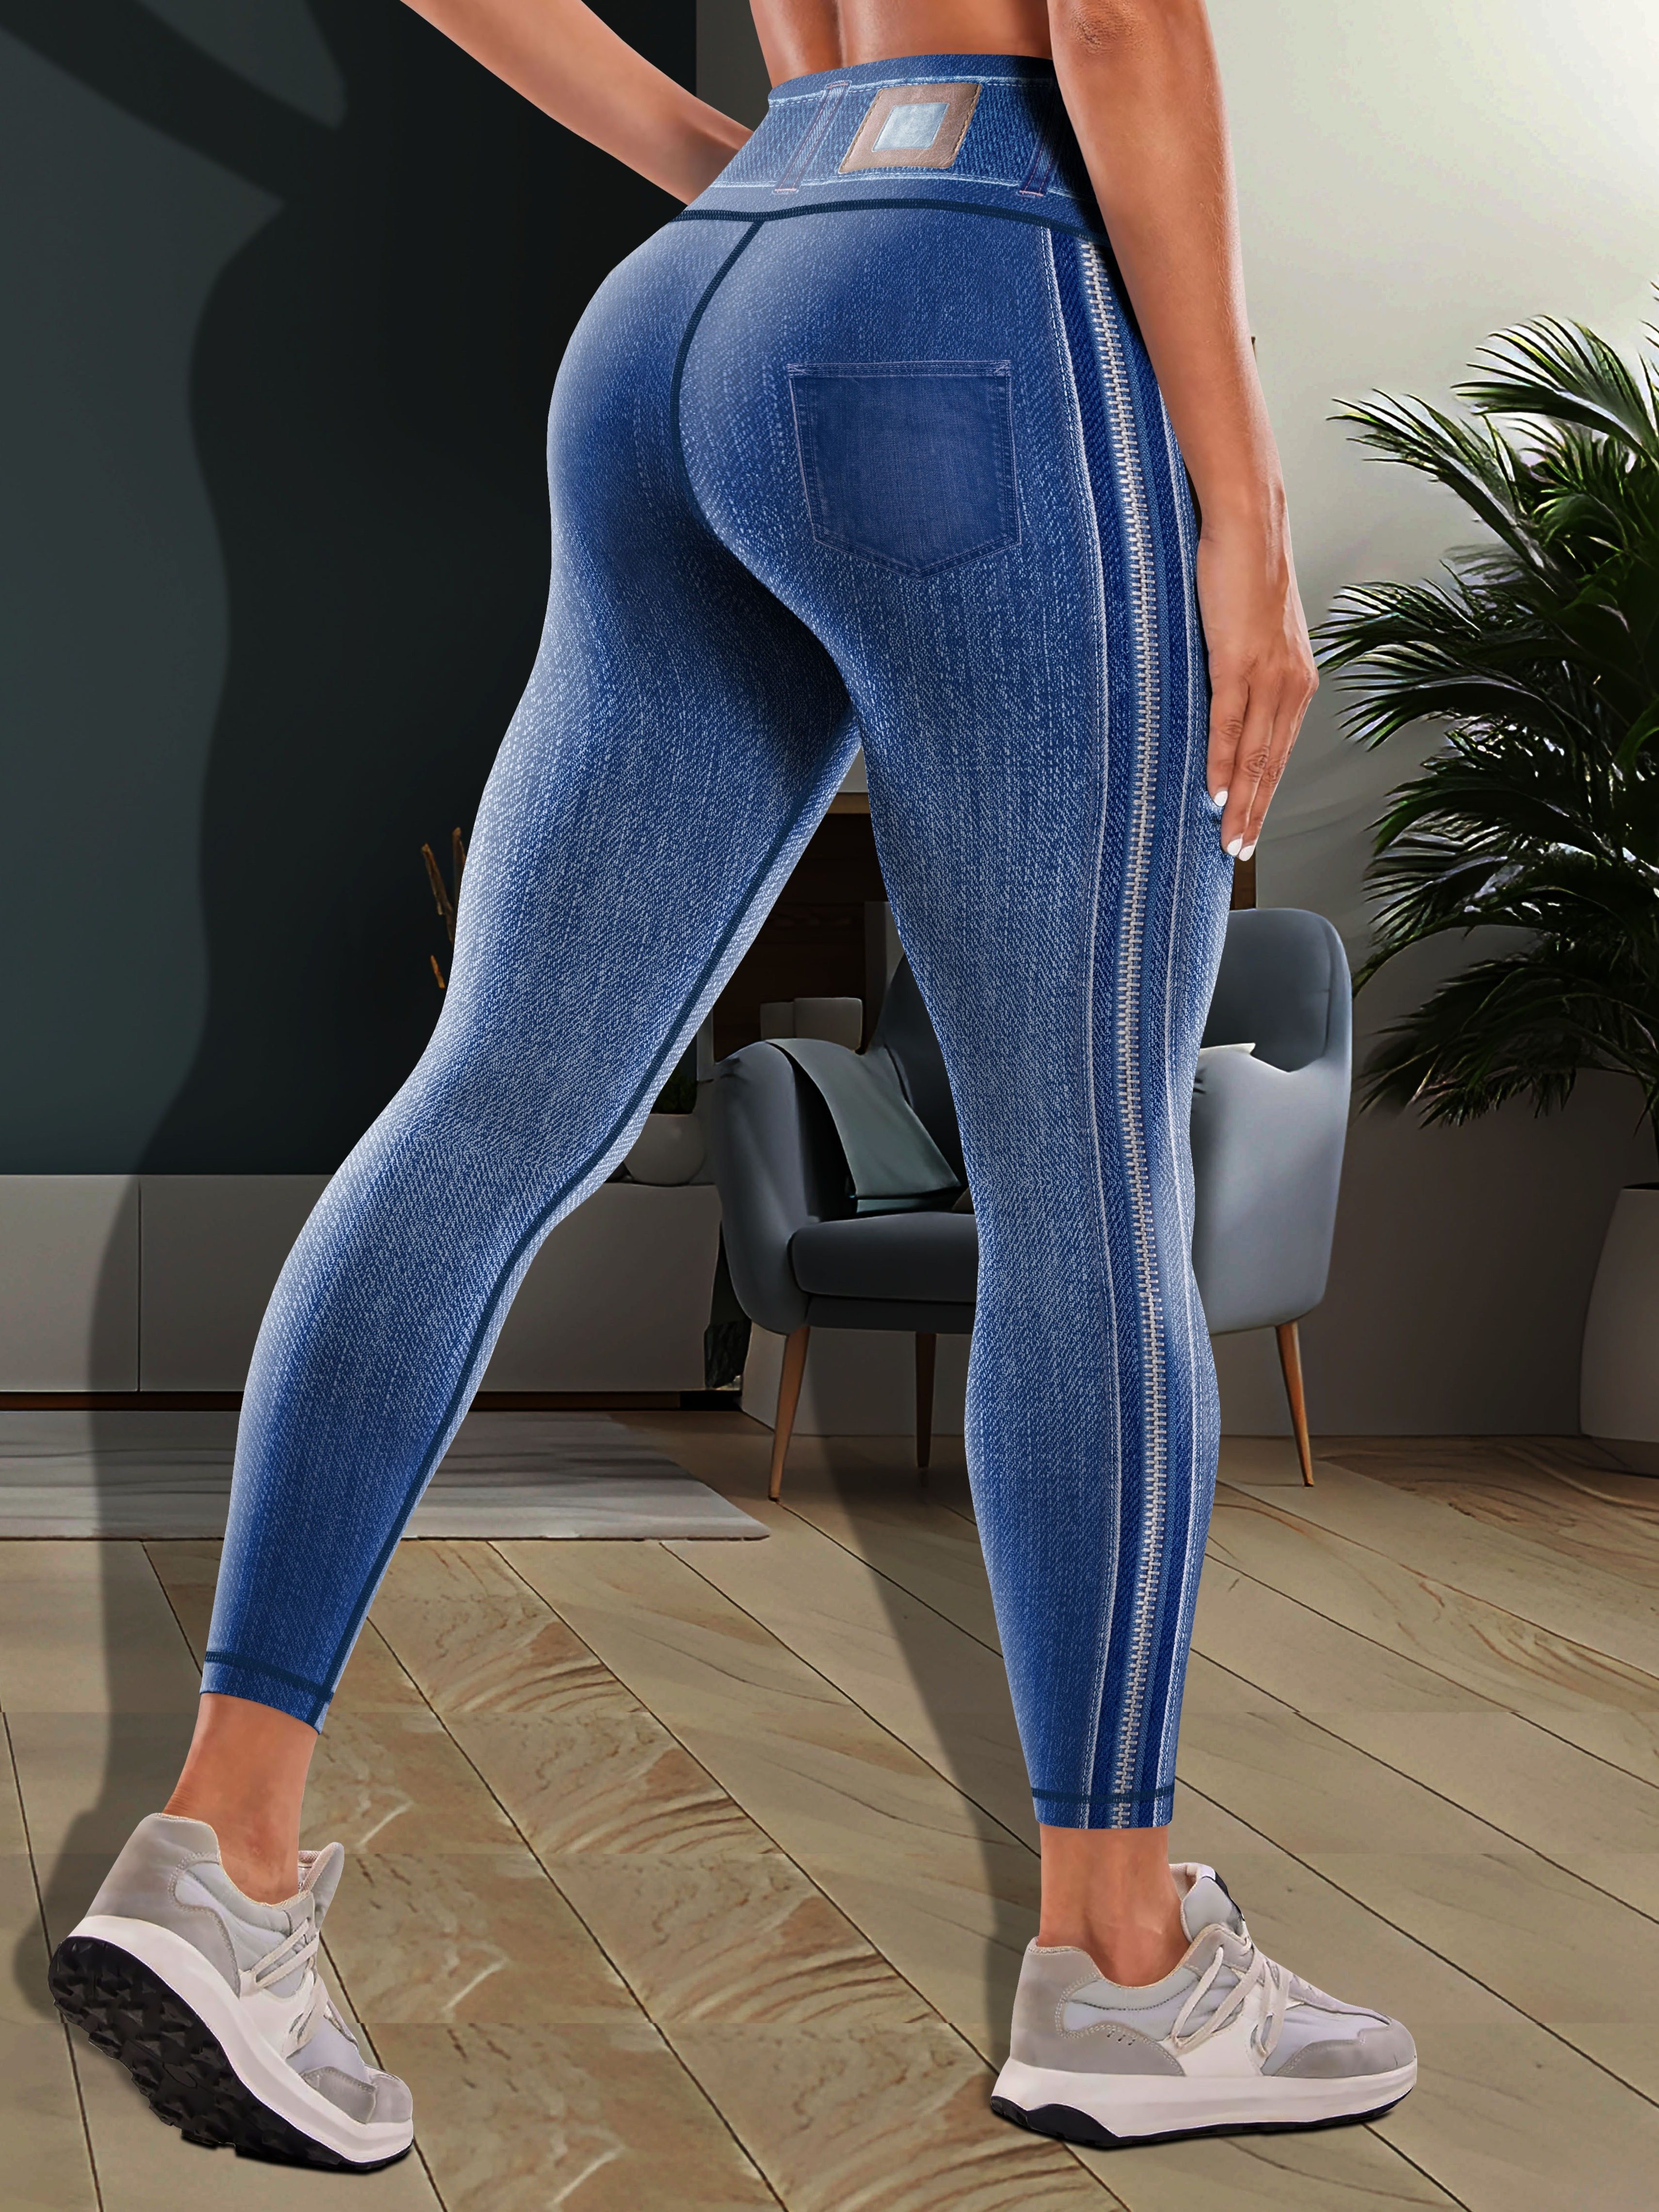 Compra online de Mulheres sem costura falso denim jeans leggings senhoras  cintura alta esporte yoga calças pantalones de mujer